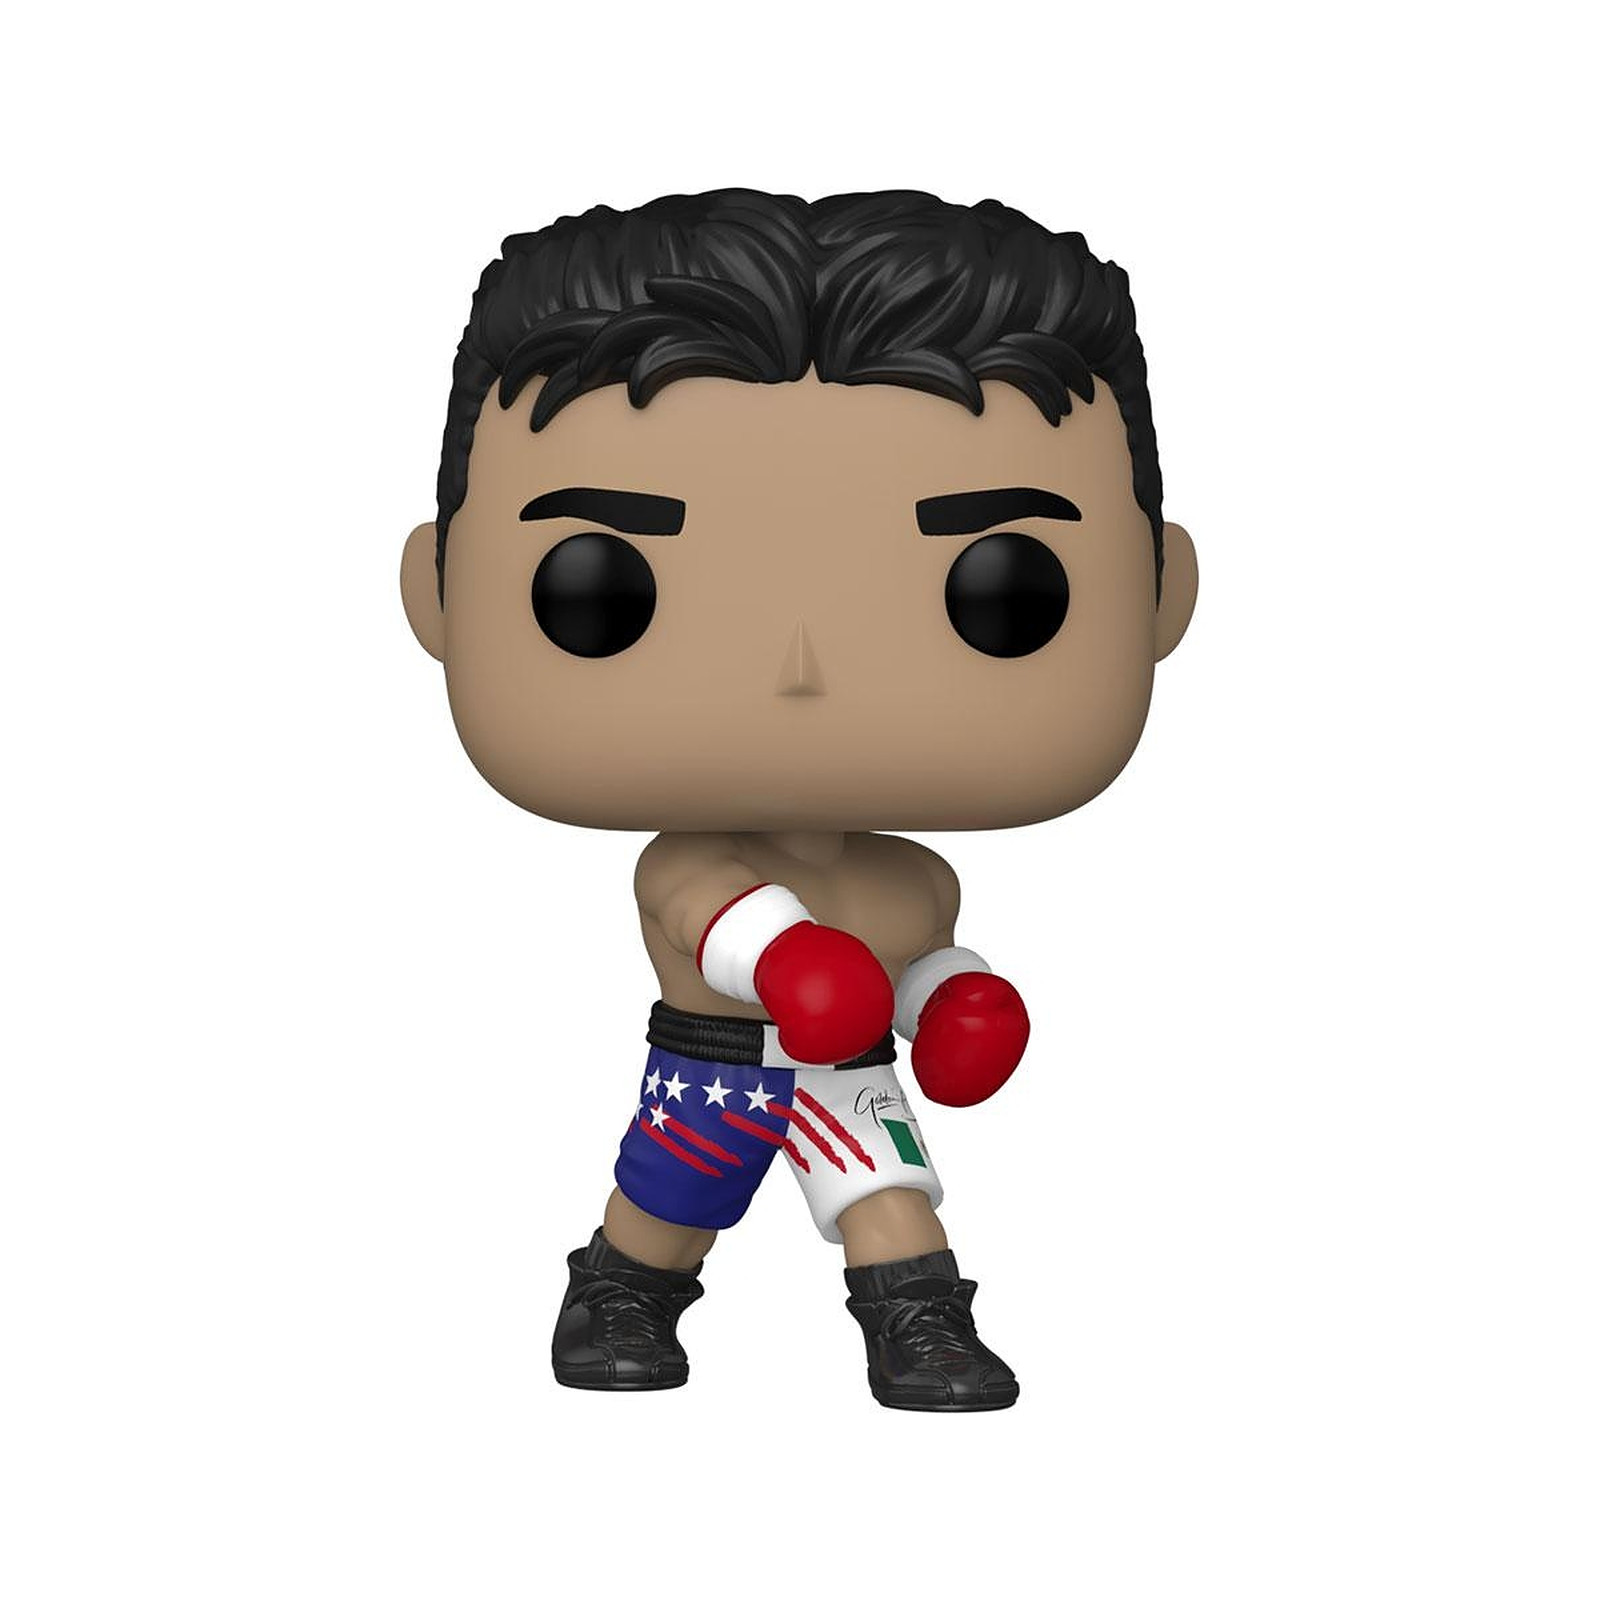 Boxe - Figurine POP! Oscar De La Hoya 9 cm - Figurines Funko